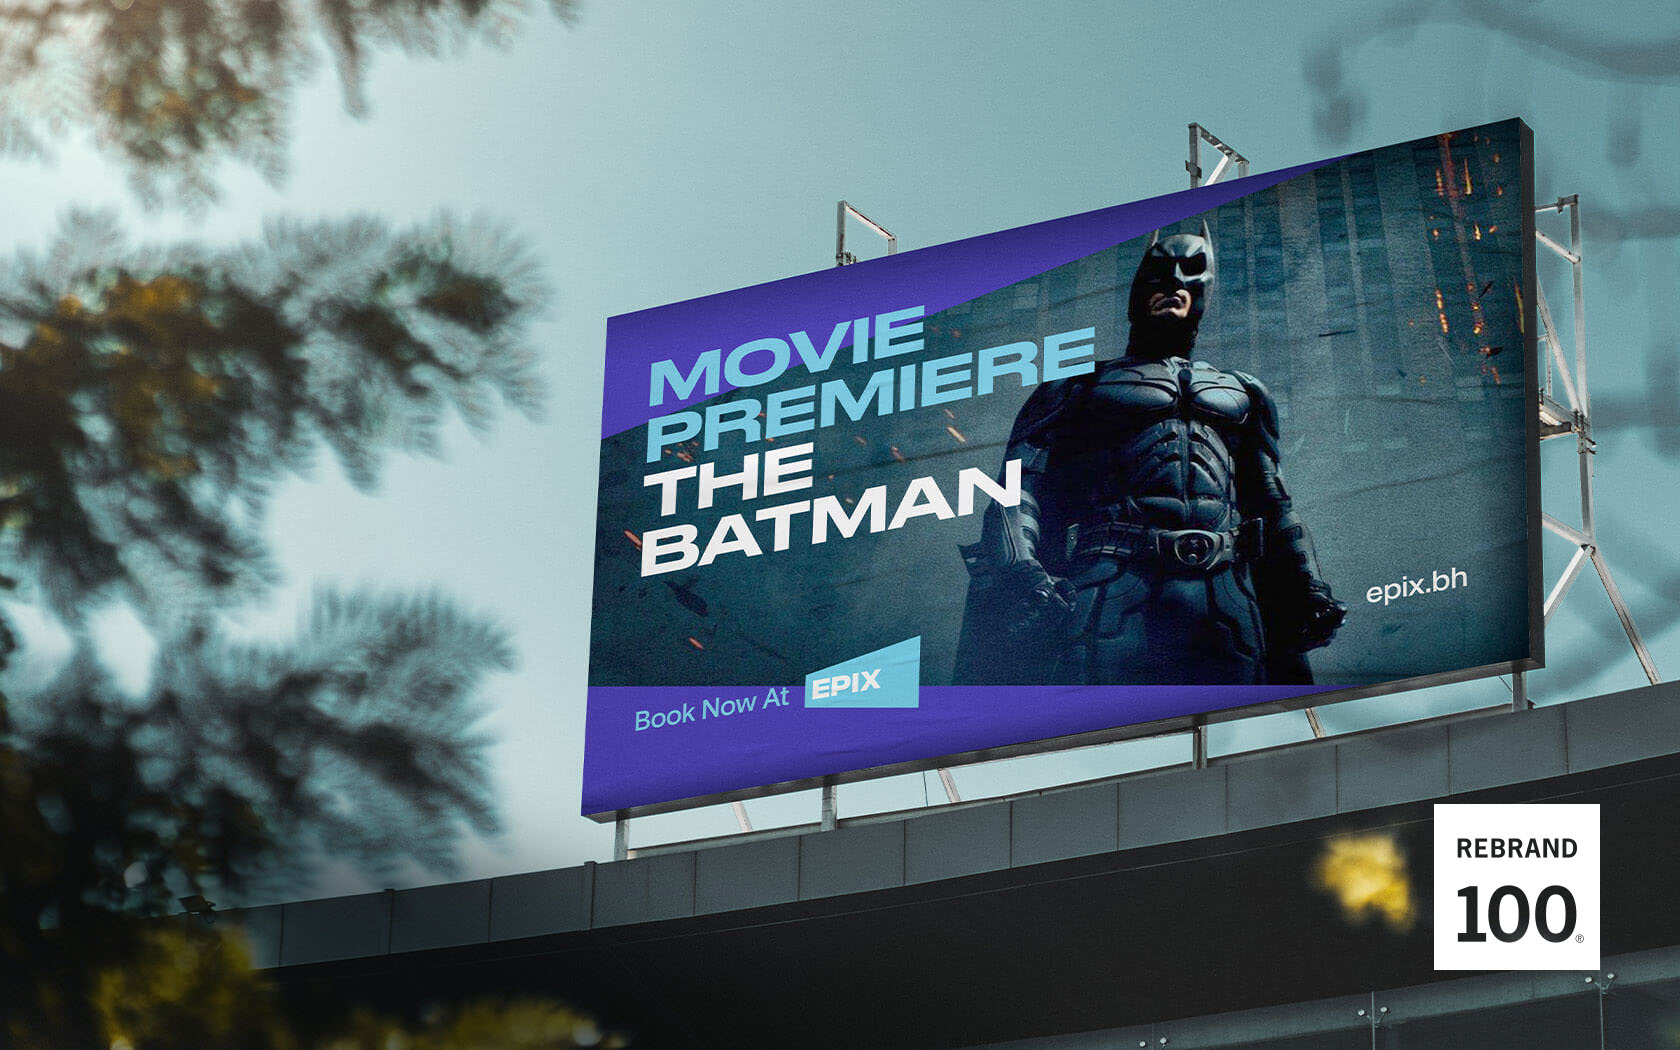 Epix. Movie poster billboard